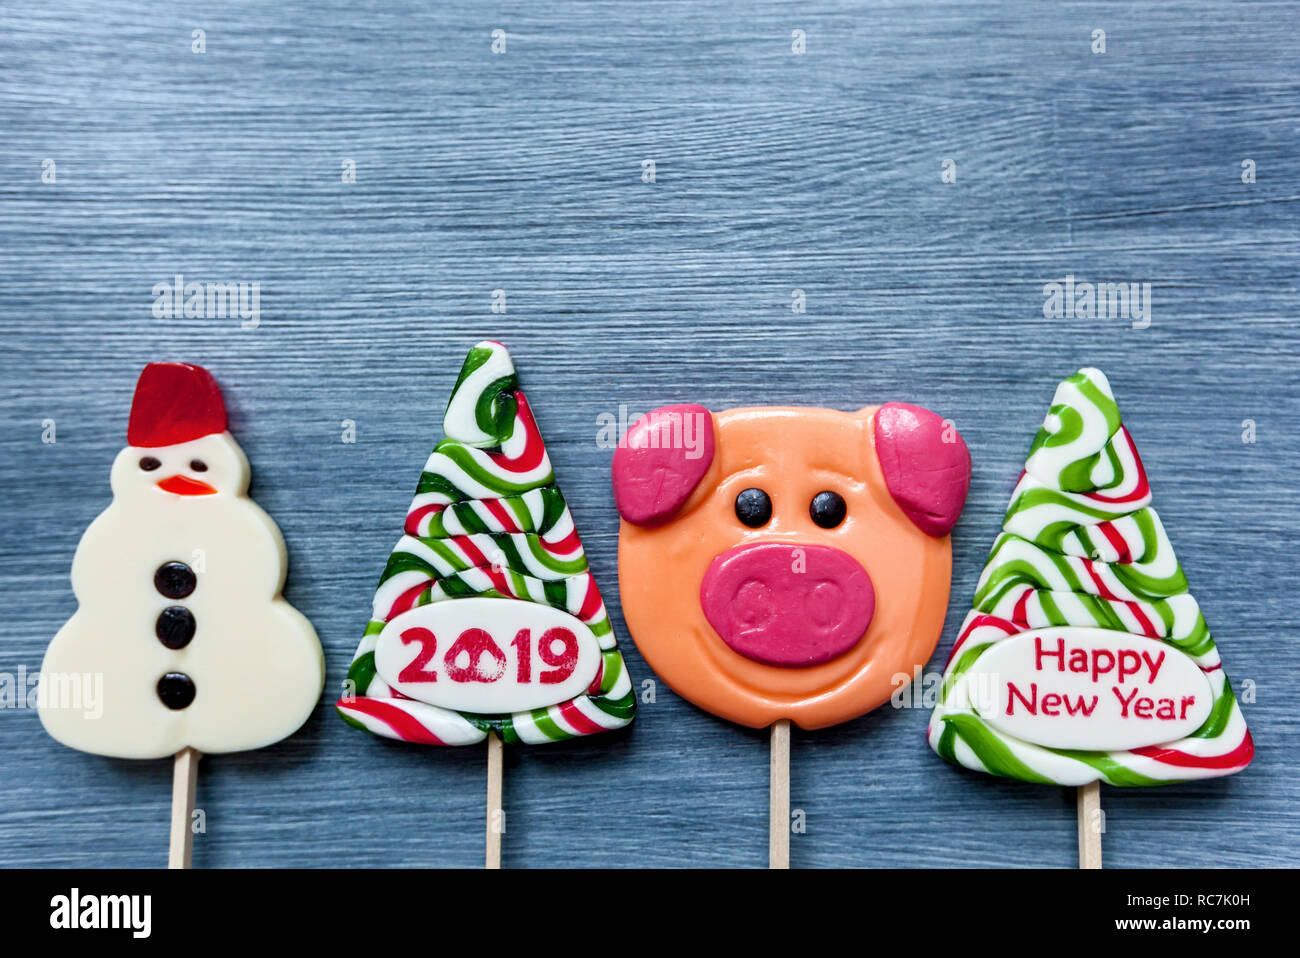 Sucettes bonbons colorés de sucreries à la nouvelle année sur un fond bleu. Arbre de Noël, bonhomme, cochon et sucettes. Sweet sucker Banque D'Images